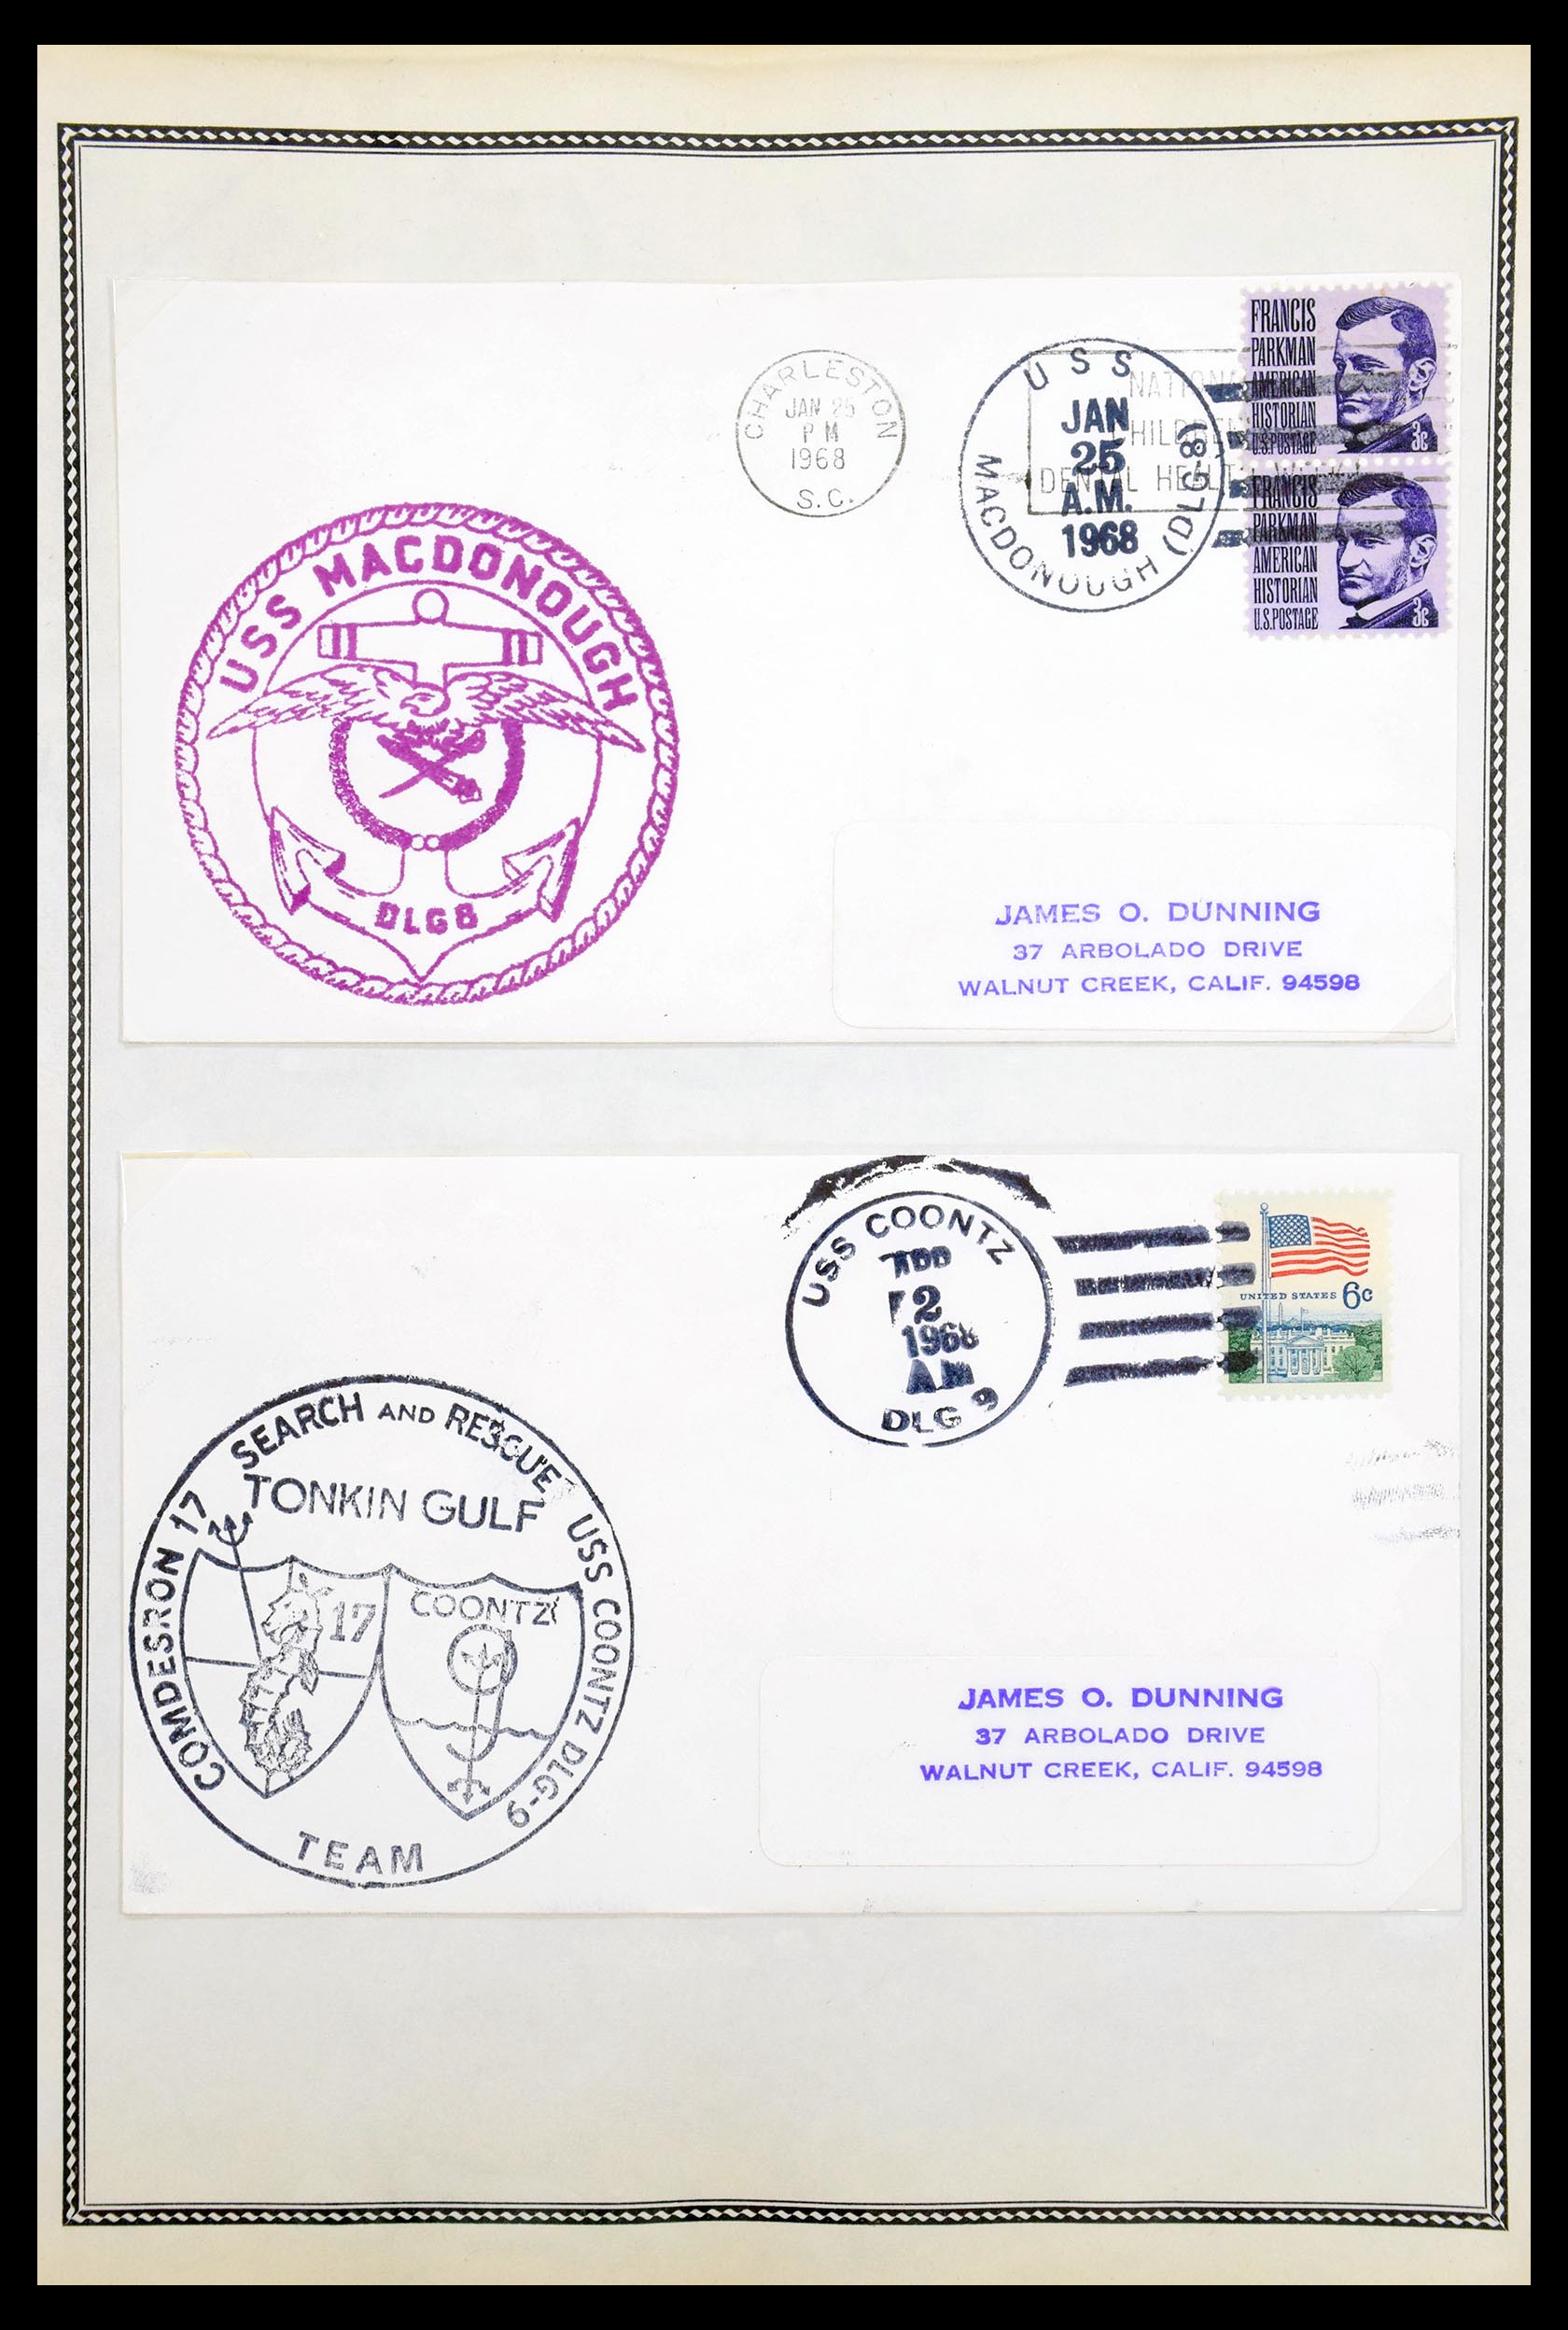 30341 099 - 30341 USA scheepspost brieven 1930-1970.